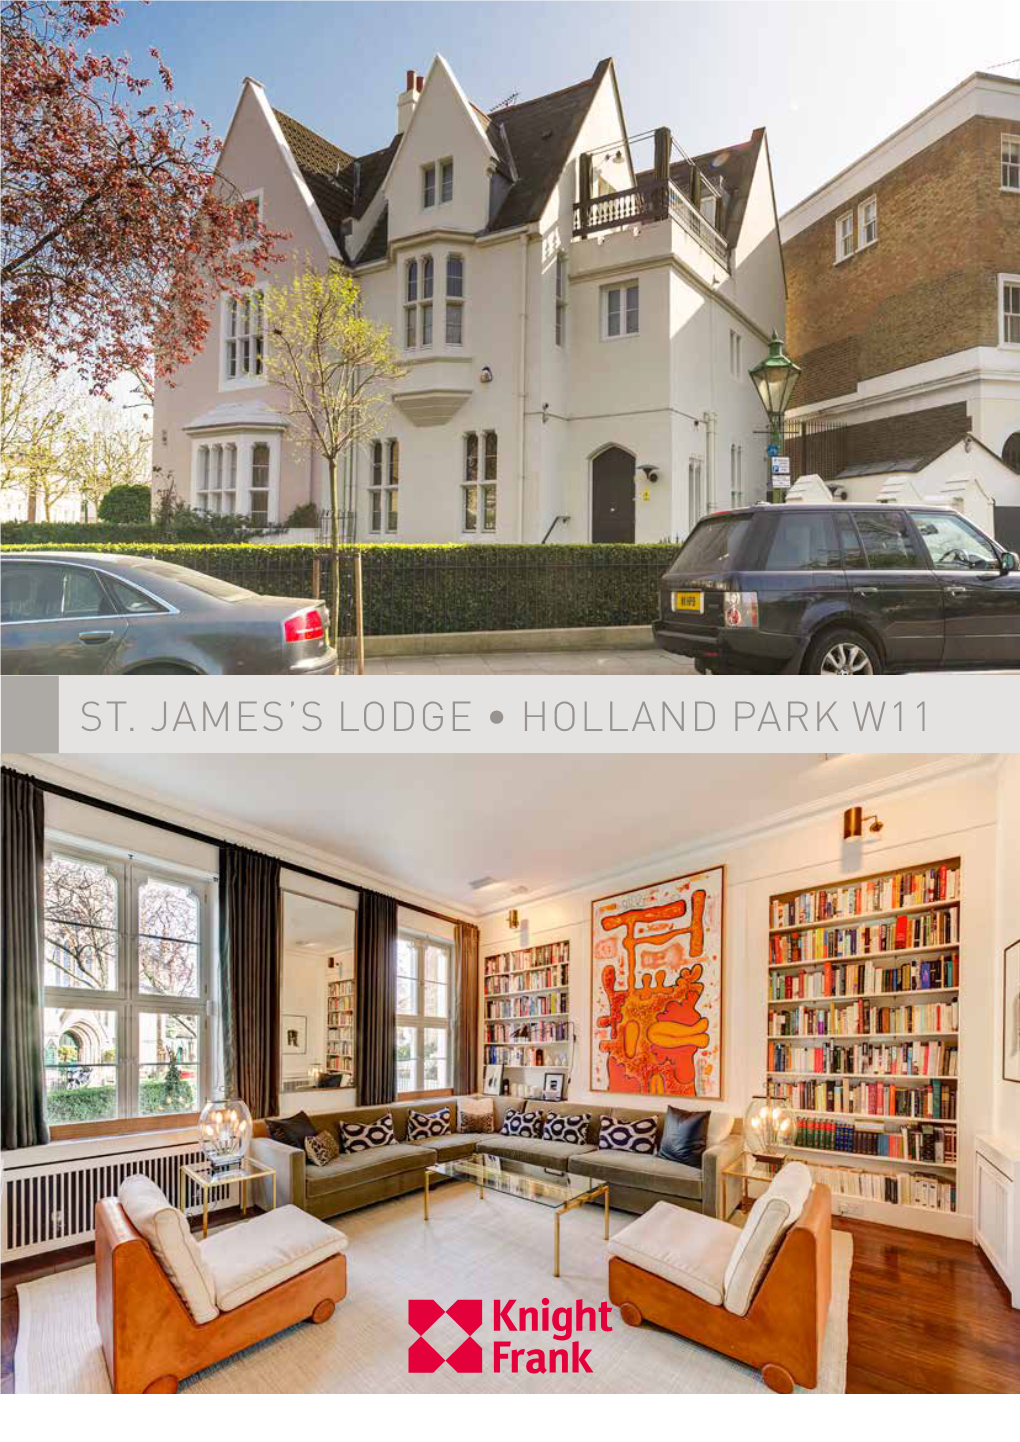 St. James's Lodge • Holland Park